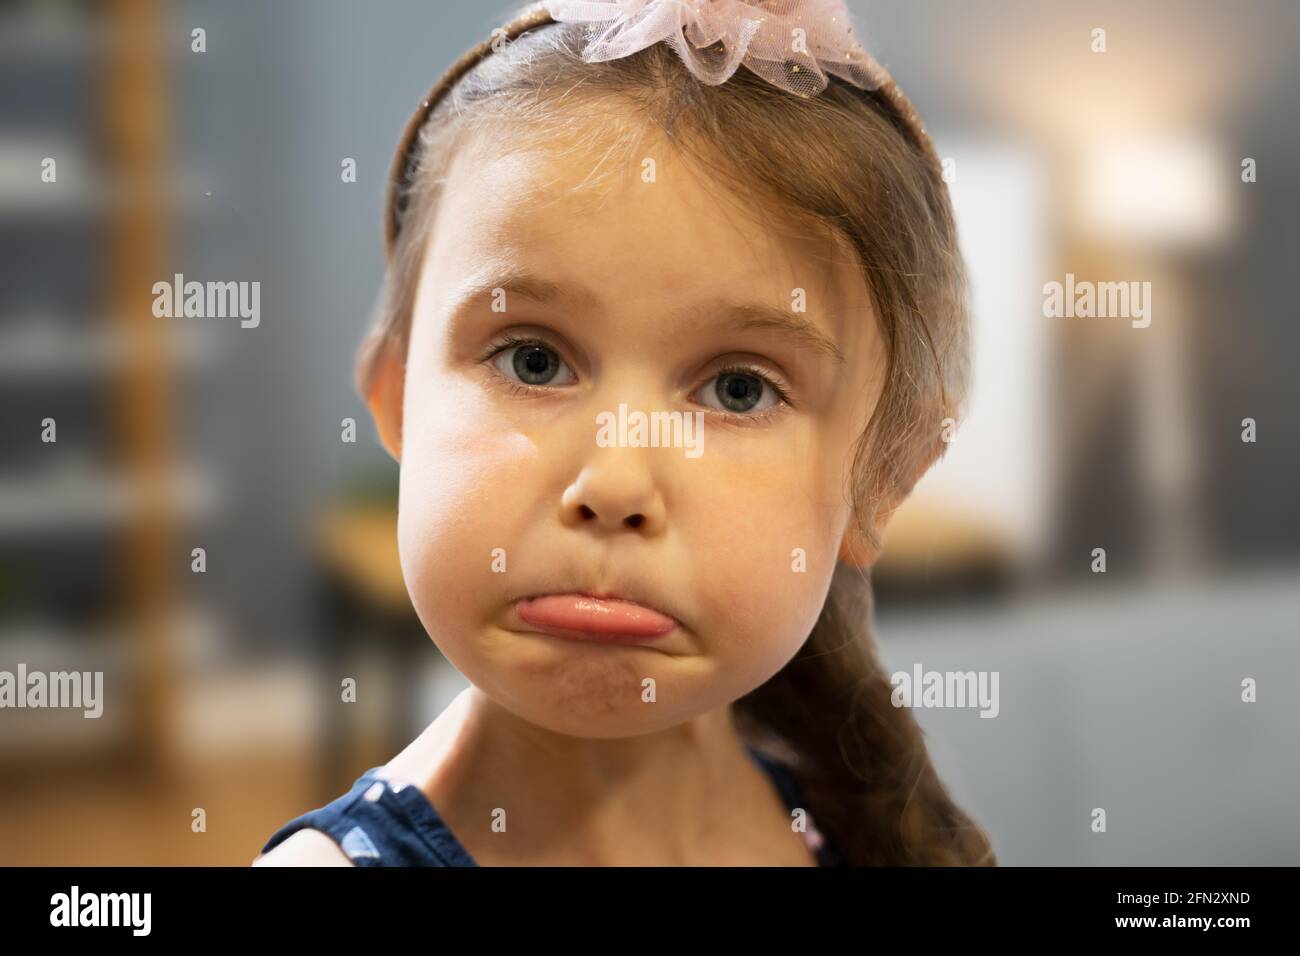 Traurige Unglückliche Kleine Mädchen Emotion. Kinderporträt Stockfoto